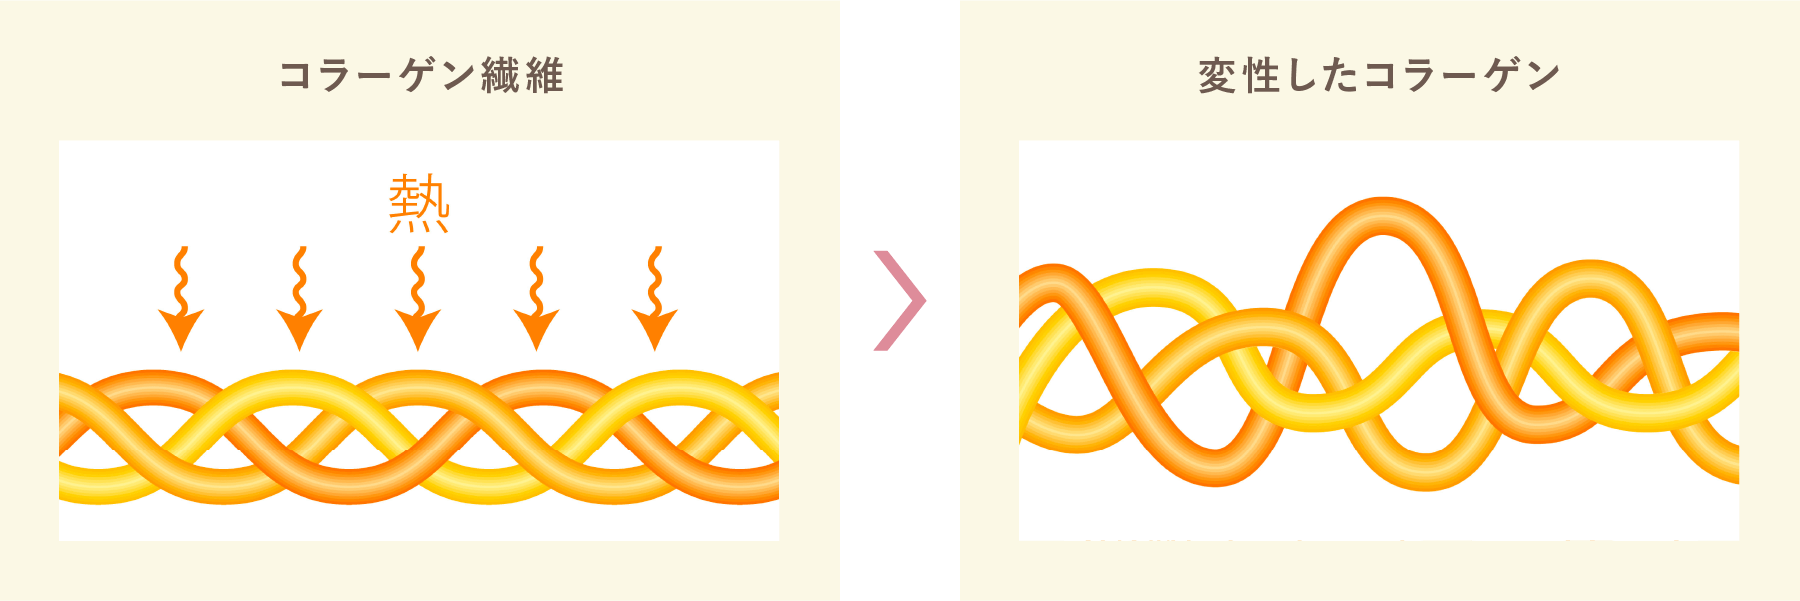 コラーゲン繊維と変性したコラーゲンのイメージ図